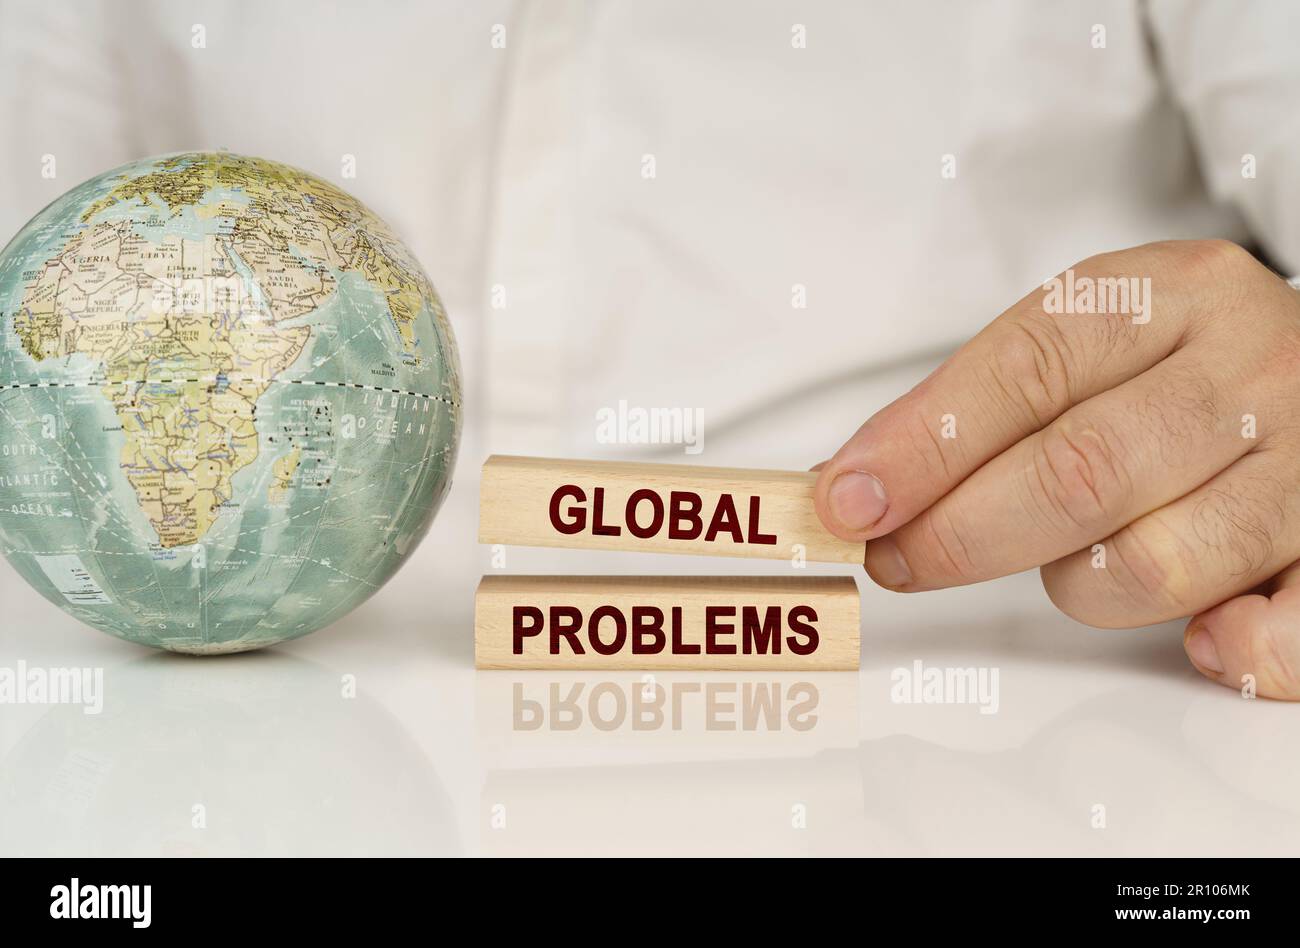 C'è un globo su una superficie bianca riflettente, nelle mani di blocchi di legno con l'iscrizione - problemi globali. Concetto aziendale. Foto Stock